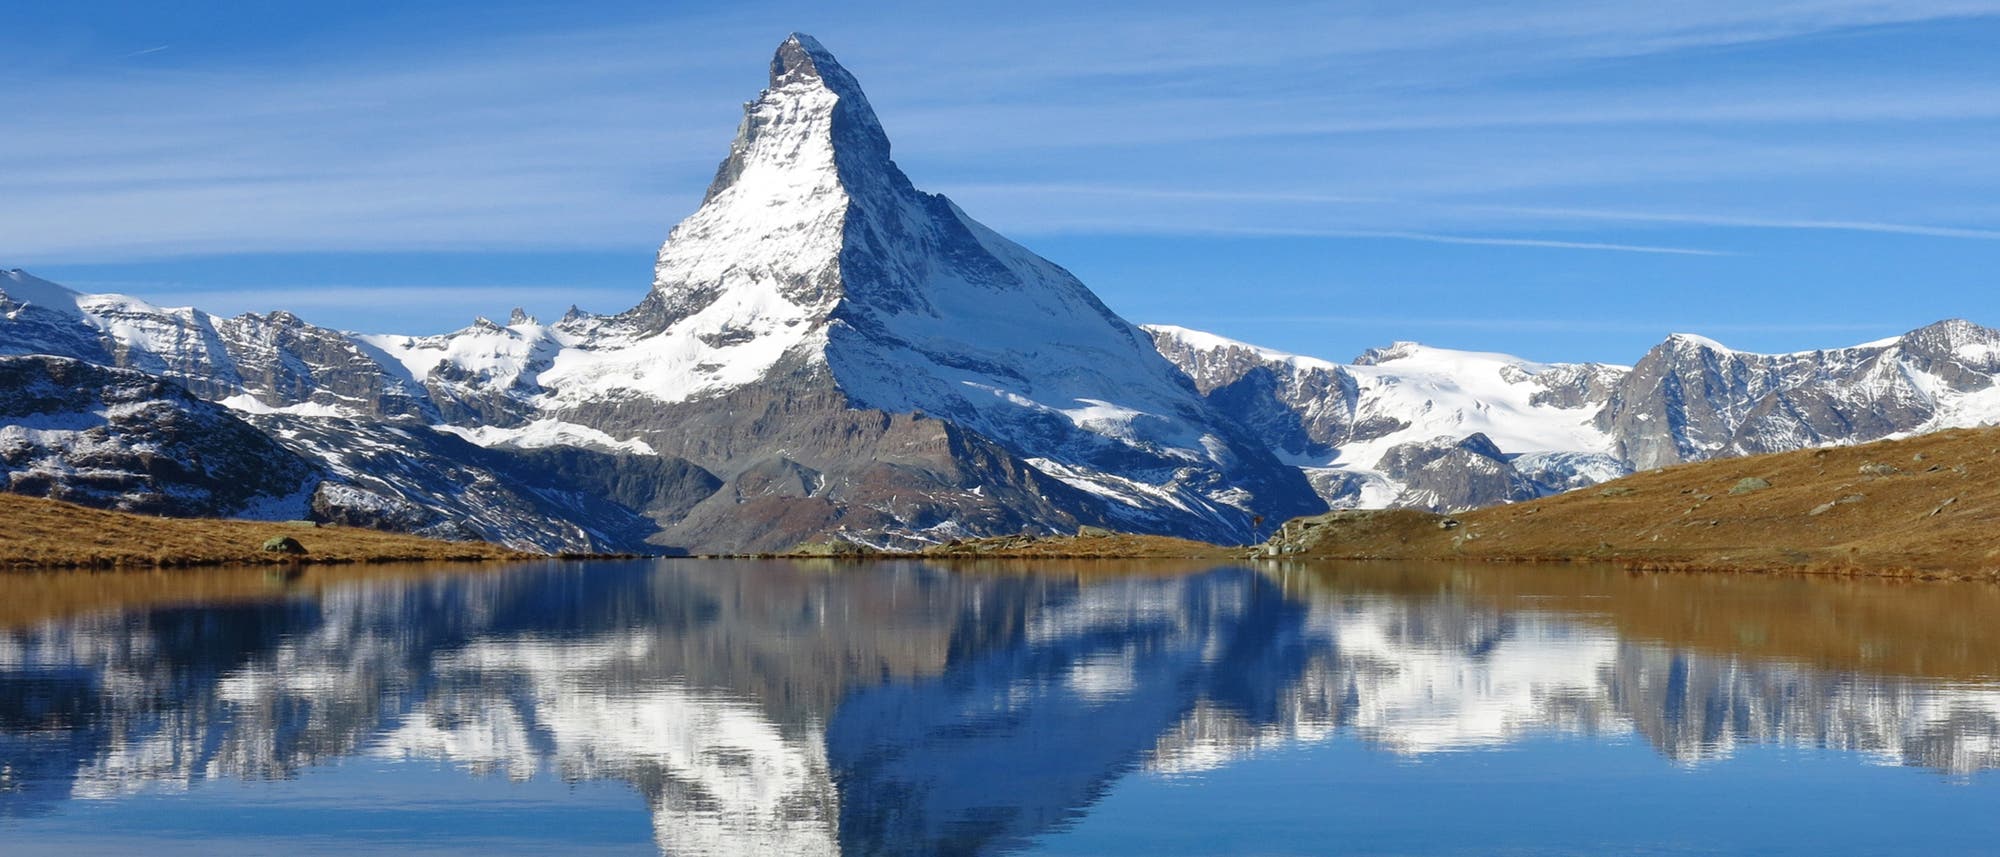 Das Idealbild eines Berges: Matterhorn in der Schweiz